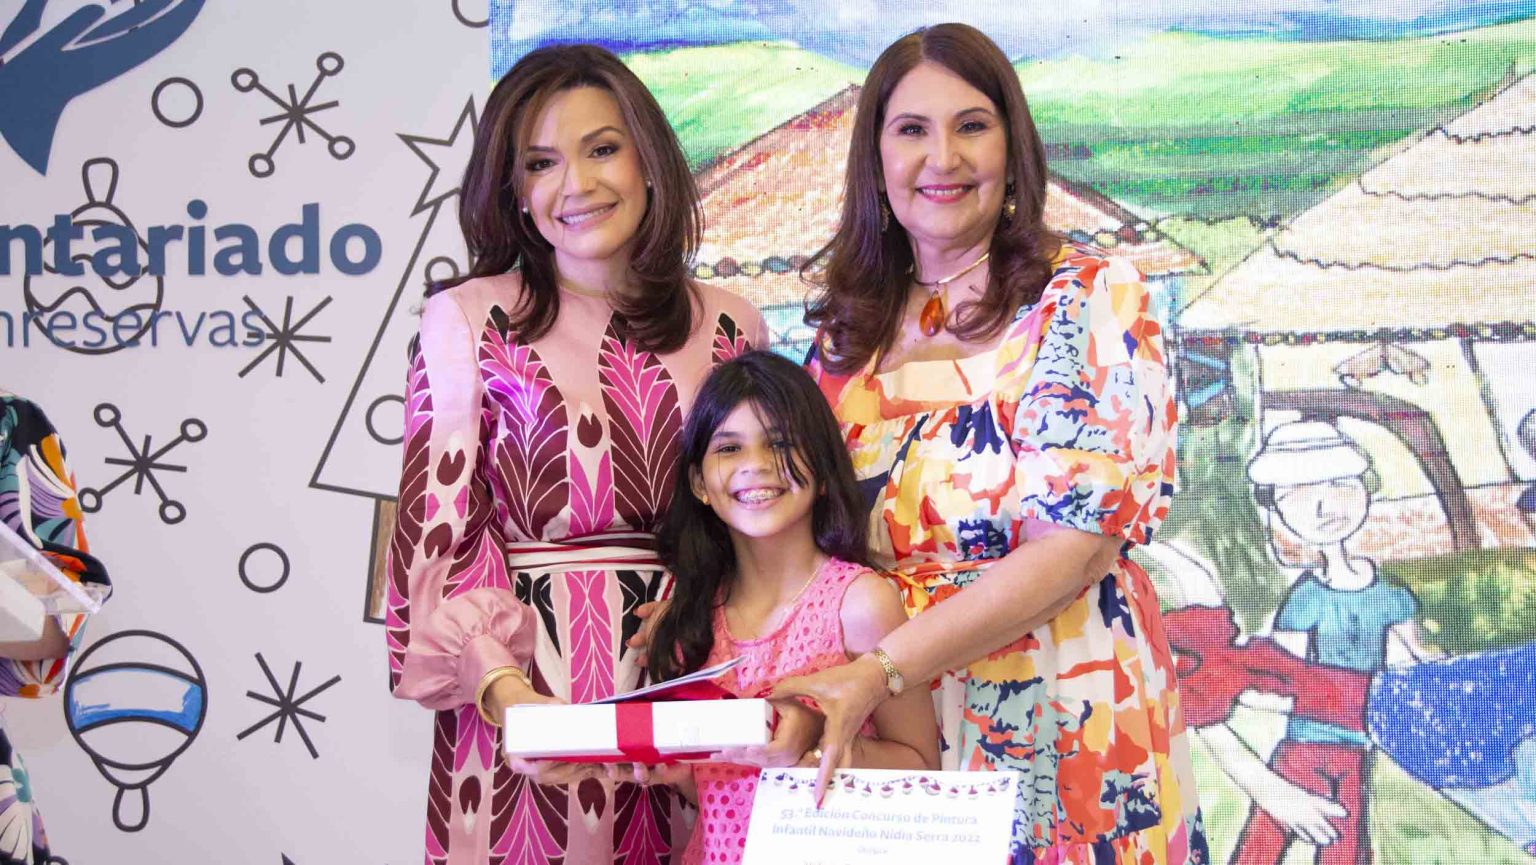 Voluntariado Banreservas convoca al 54o Concurso de Pintura Infantil Navideno Nidia Serra e1696554060589